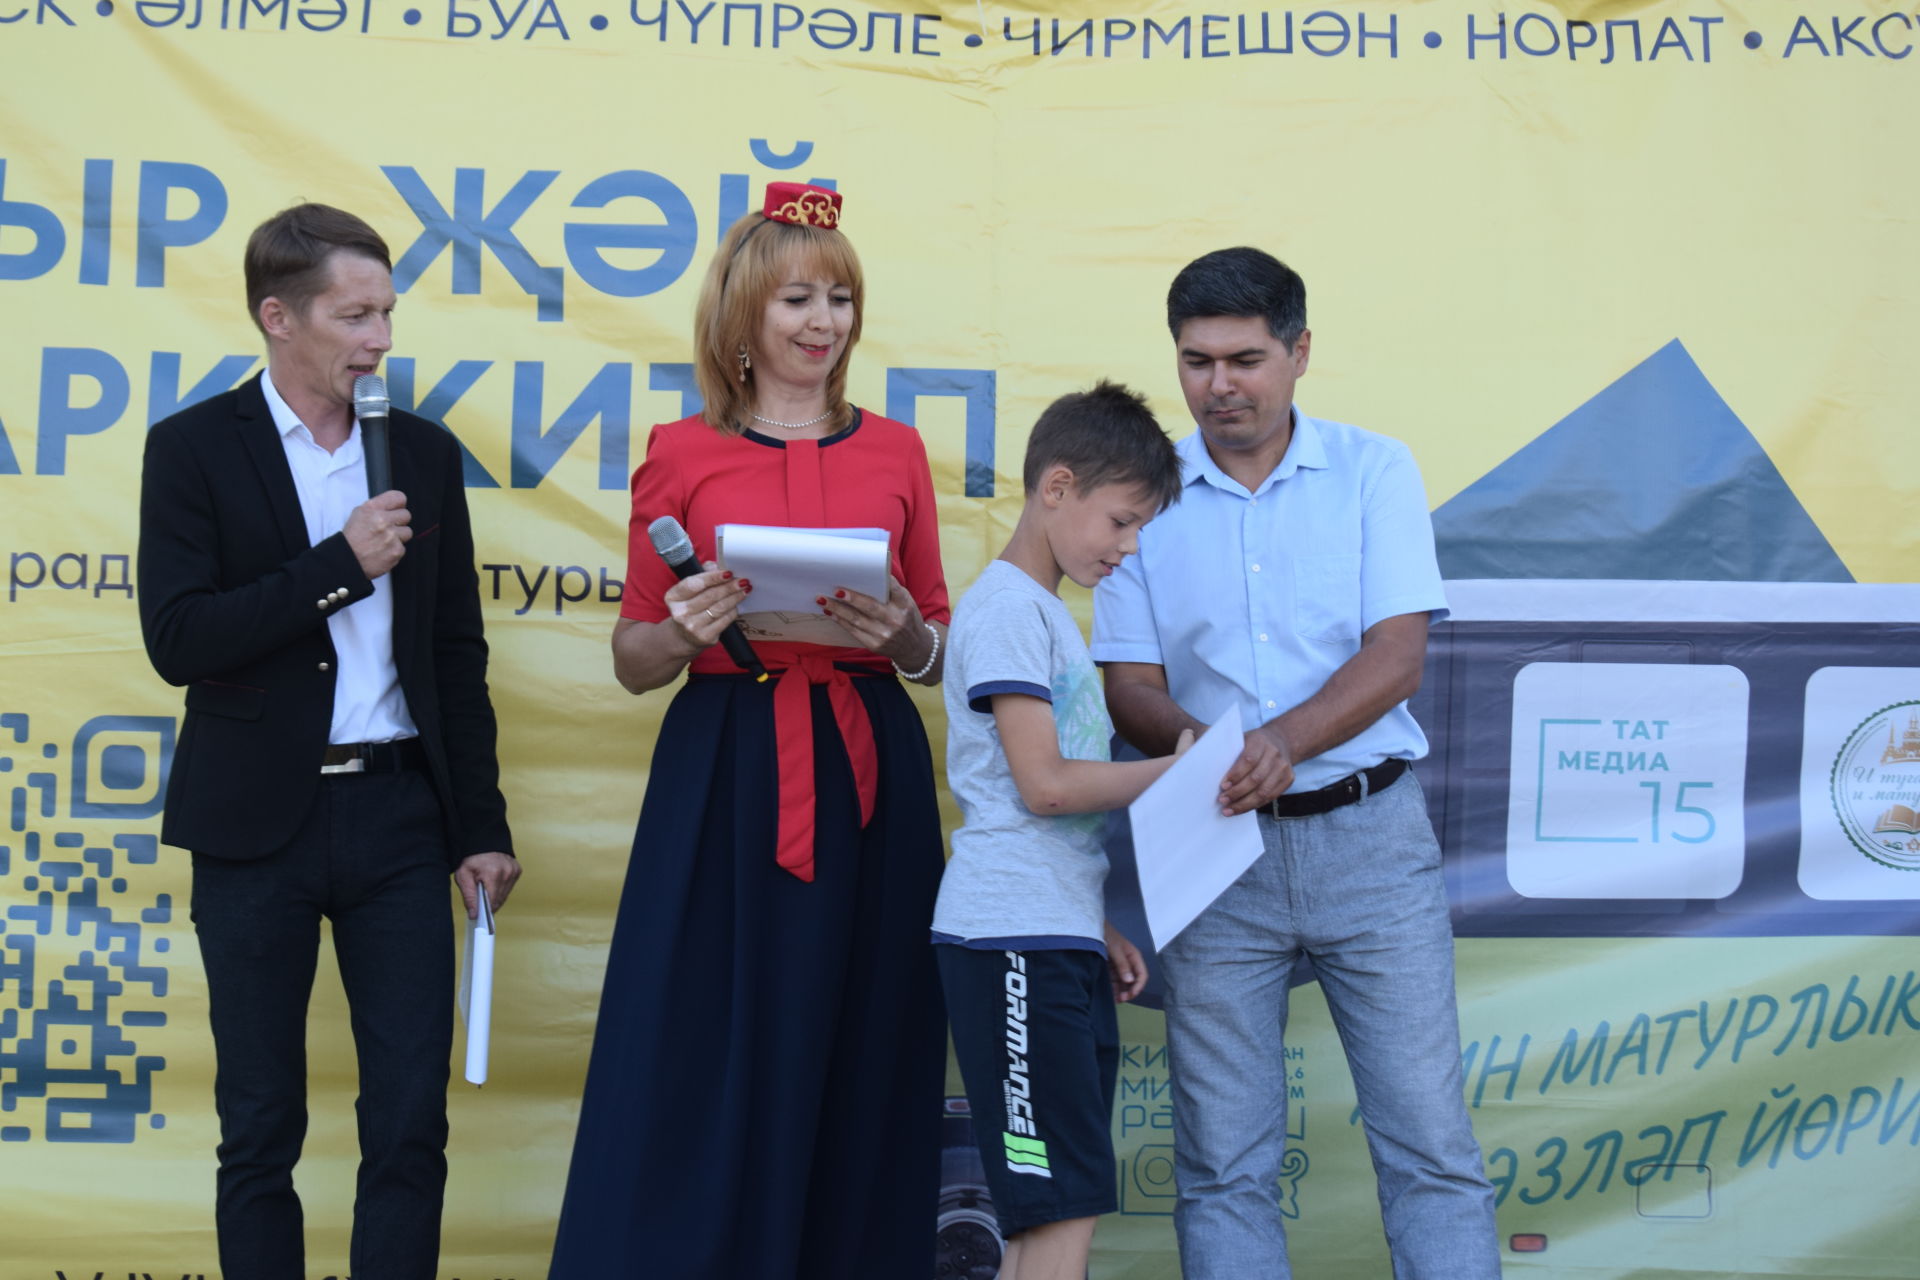 В Азнакаево прибыл автопробег радио “Китап” 